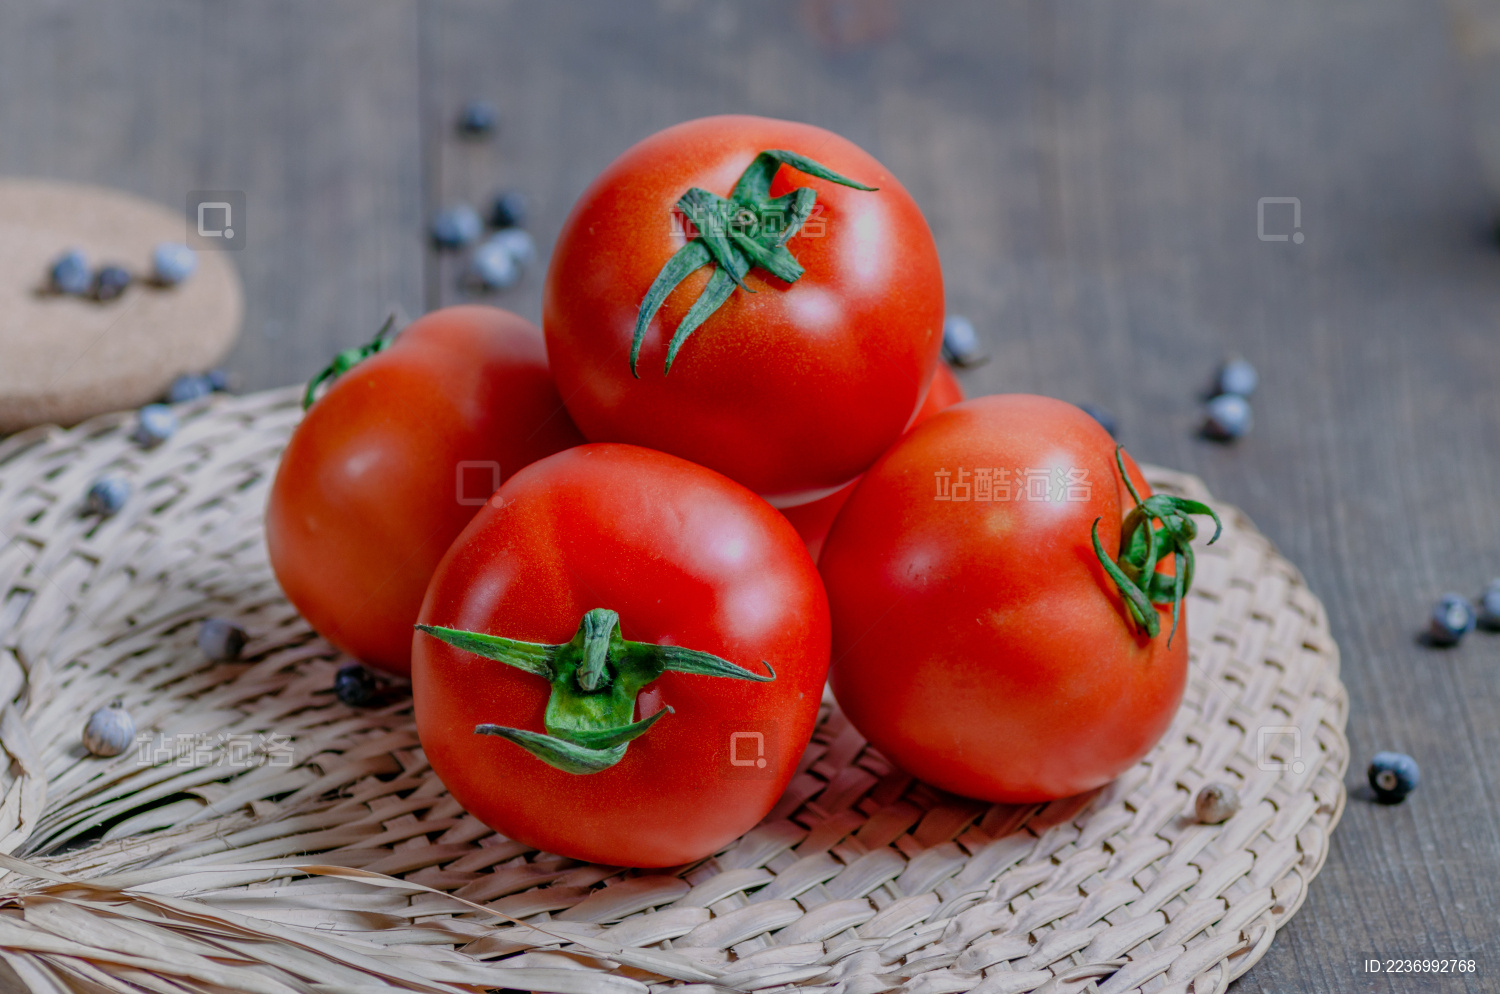 凡谷番茄百科 ｜ 番茄为什么有那么多种颜色，是转基因么？ - 知乎